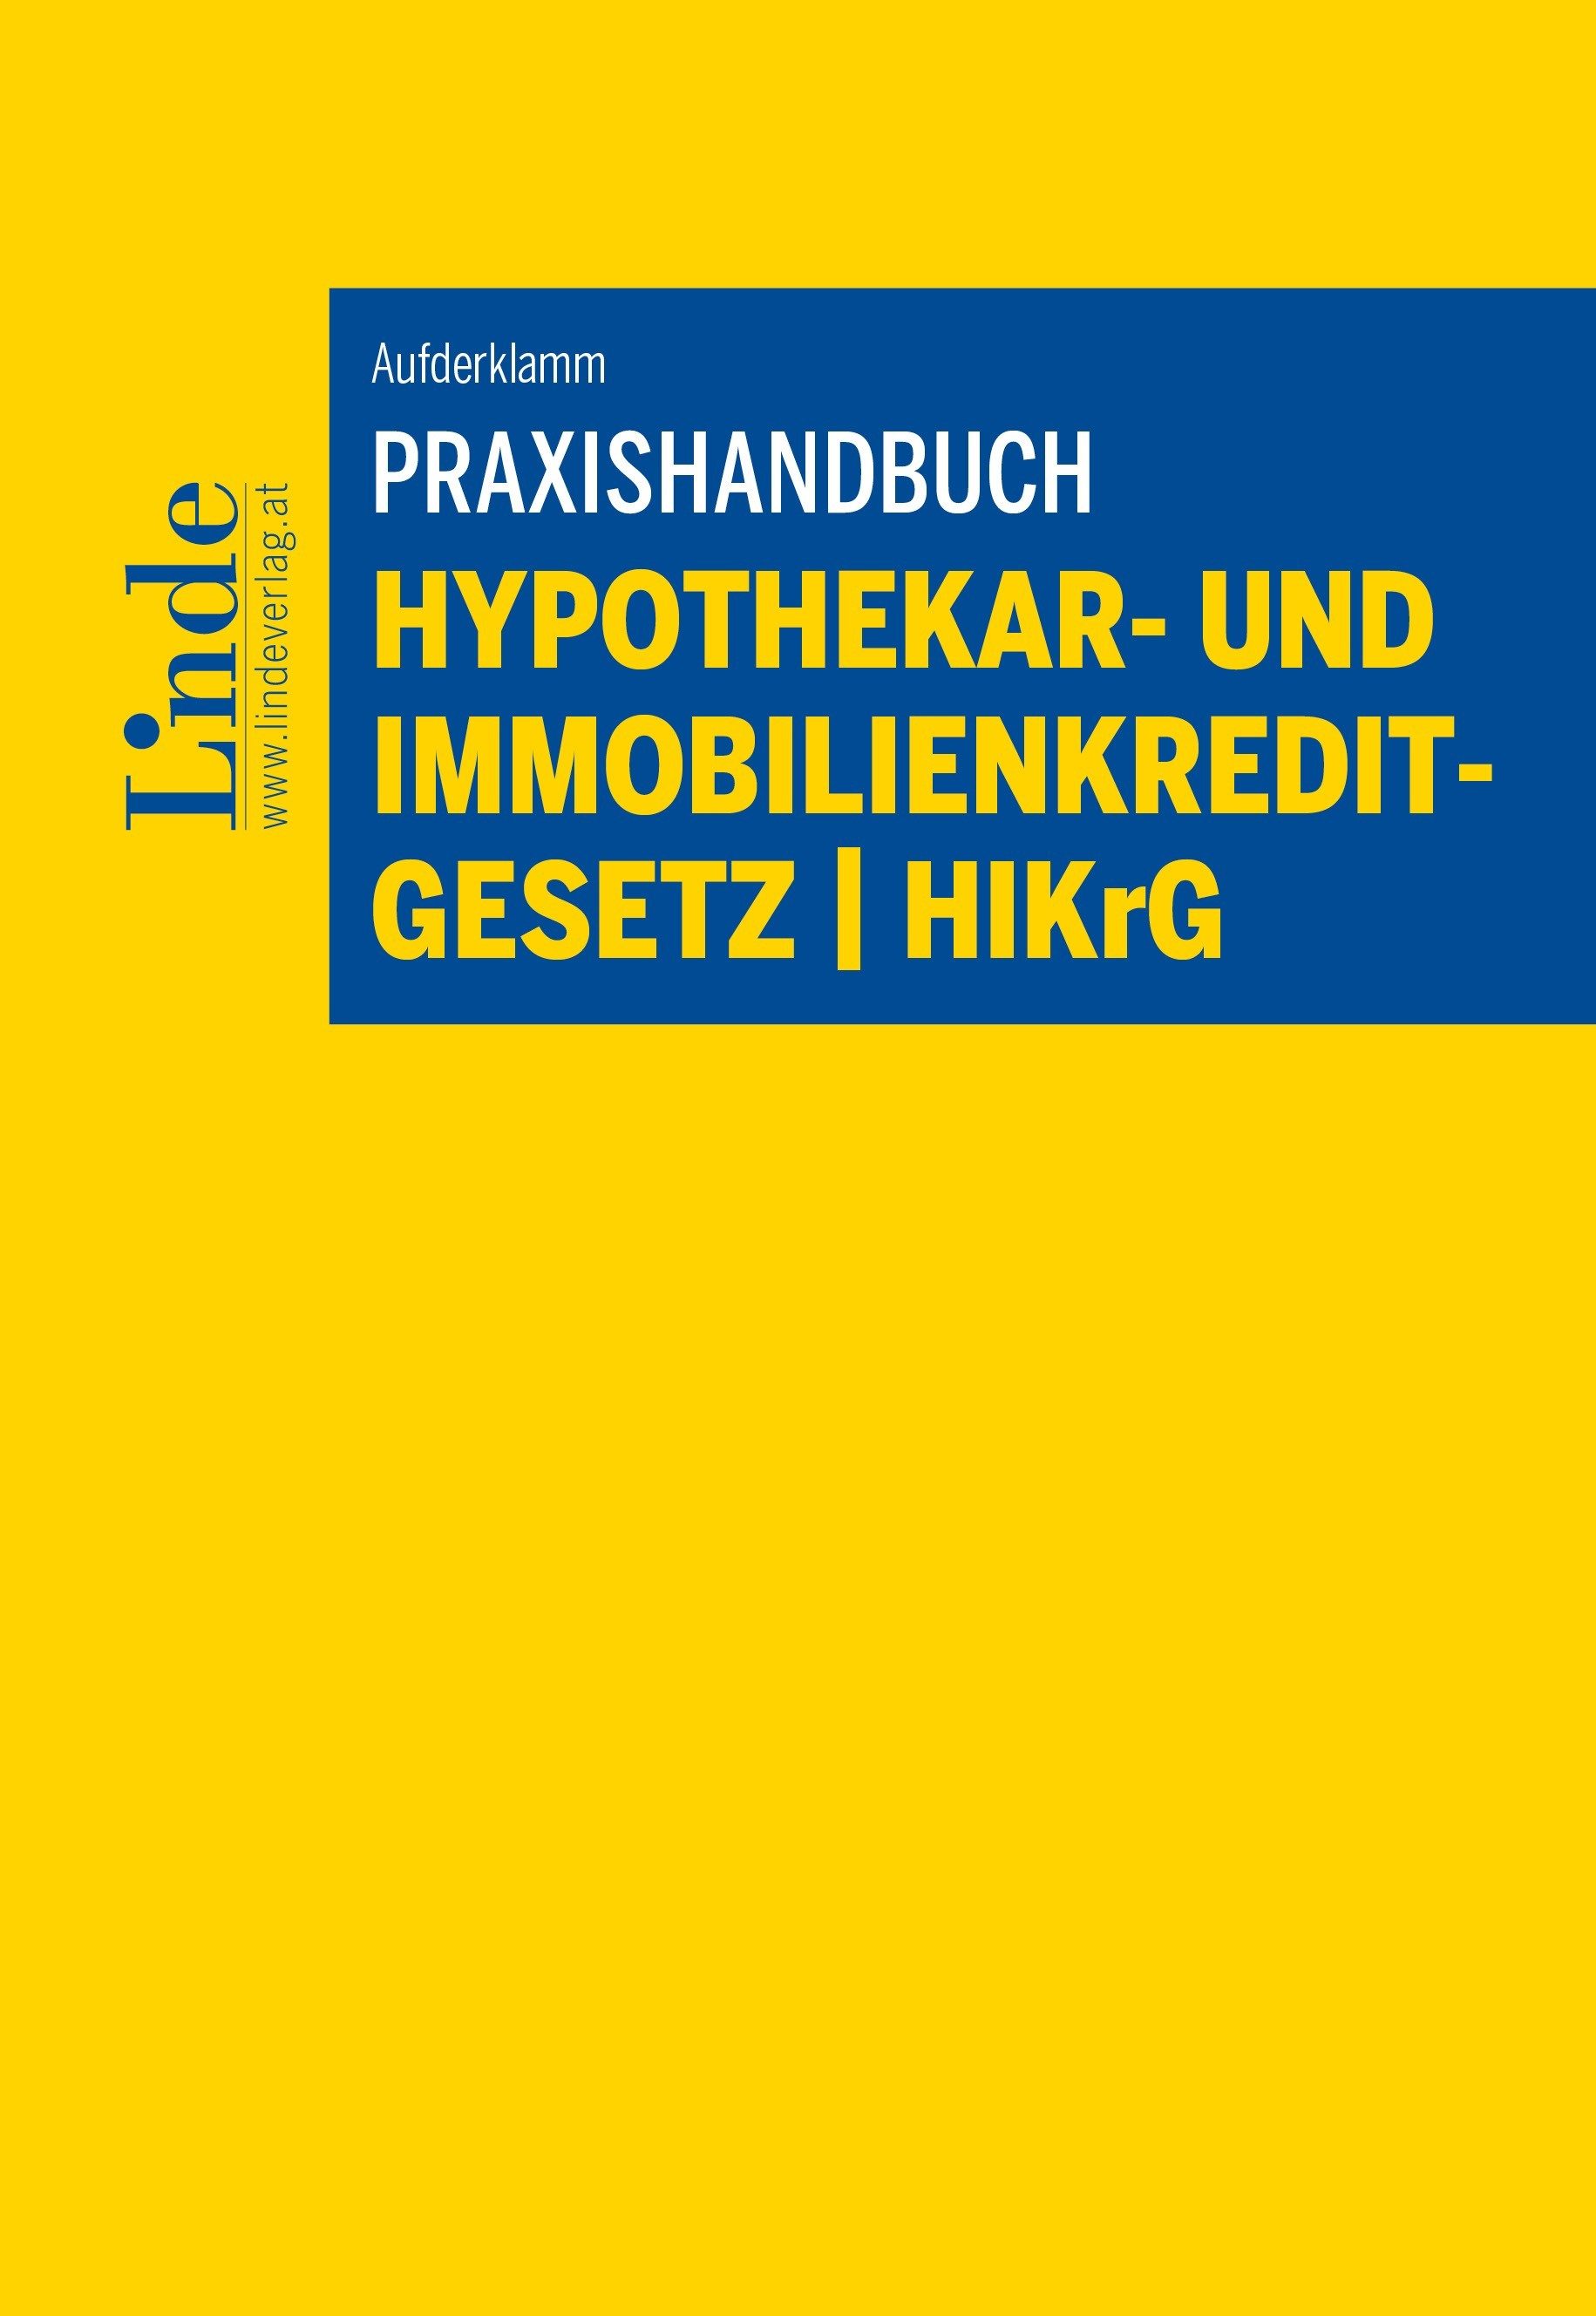 Praxishandbuch Hypothekar und Immobilienkreditgesetz - HIKrG